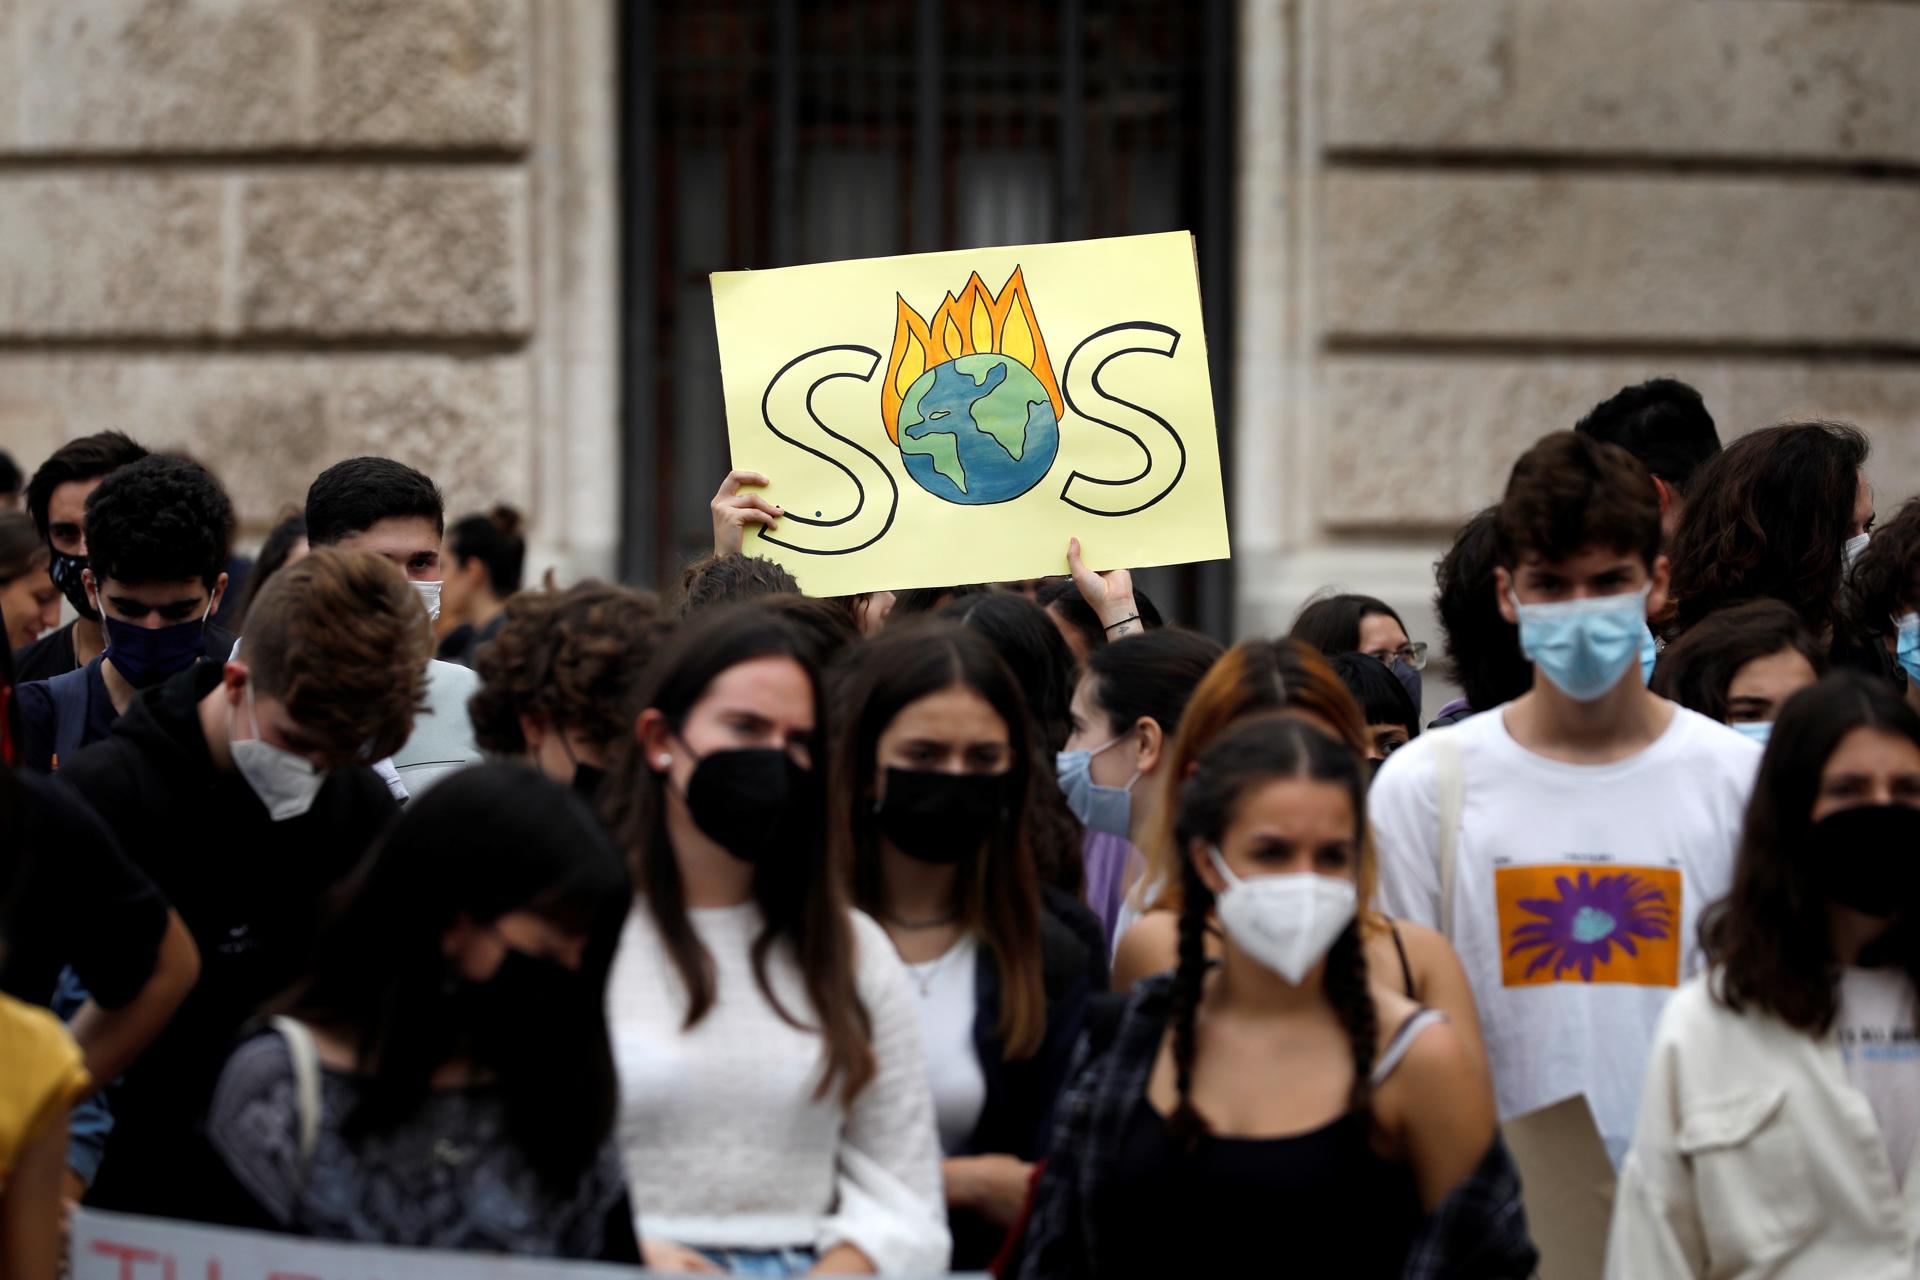 Varios jóvenes protestan en València ante lo que consideran una situación totalmente insostenible, en el marco de los conocidos como "Fridays for Future" para pedir a los gobiernos una acción decidida frente al cambio climático. EFE/Ana Escobar/Archivo